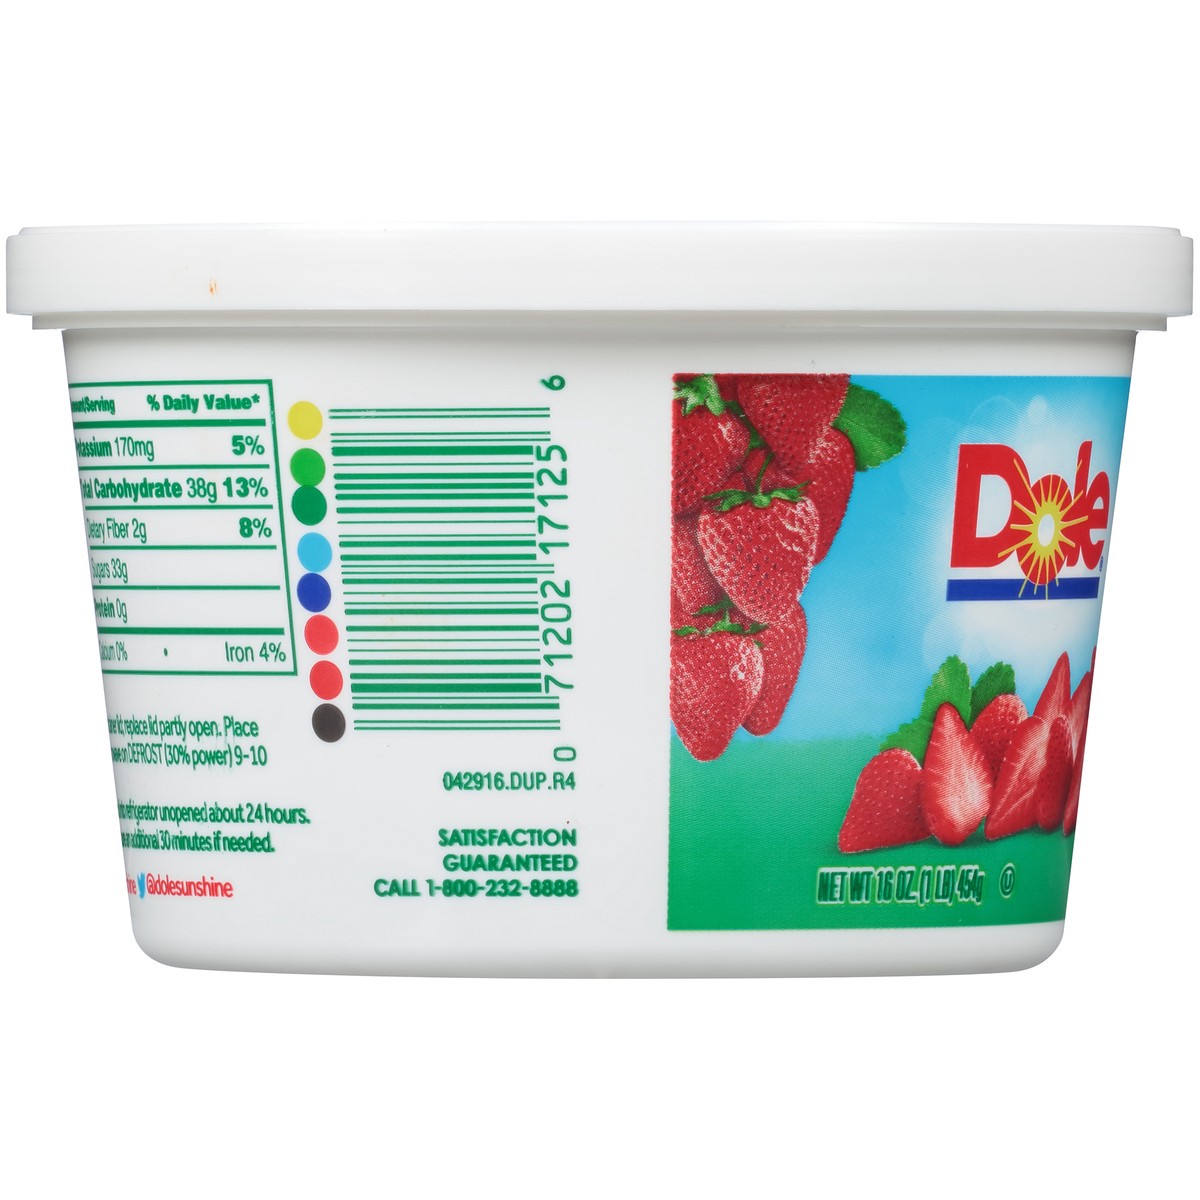 slide 5 of 7, Dole Sliced Strawberries in Sugar 16 oz. Tub, 16 oz